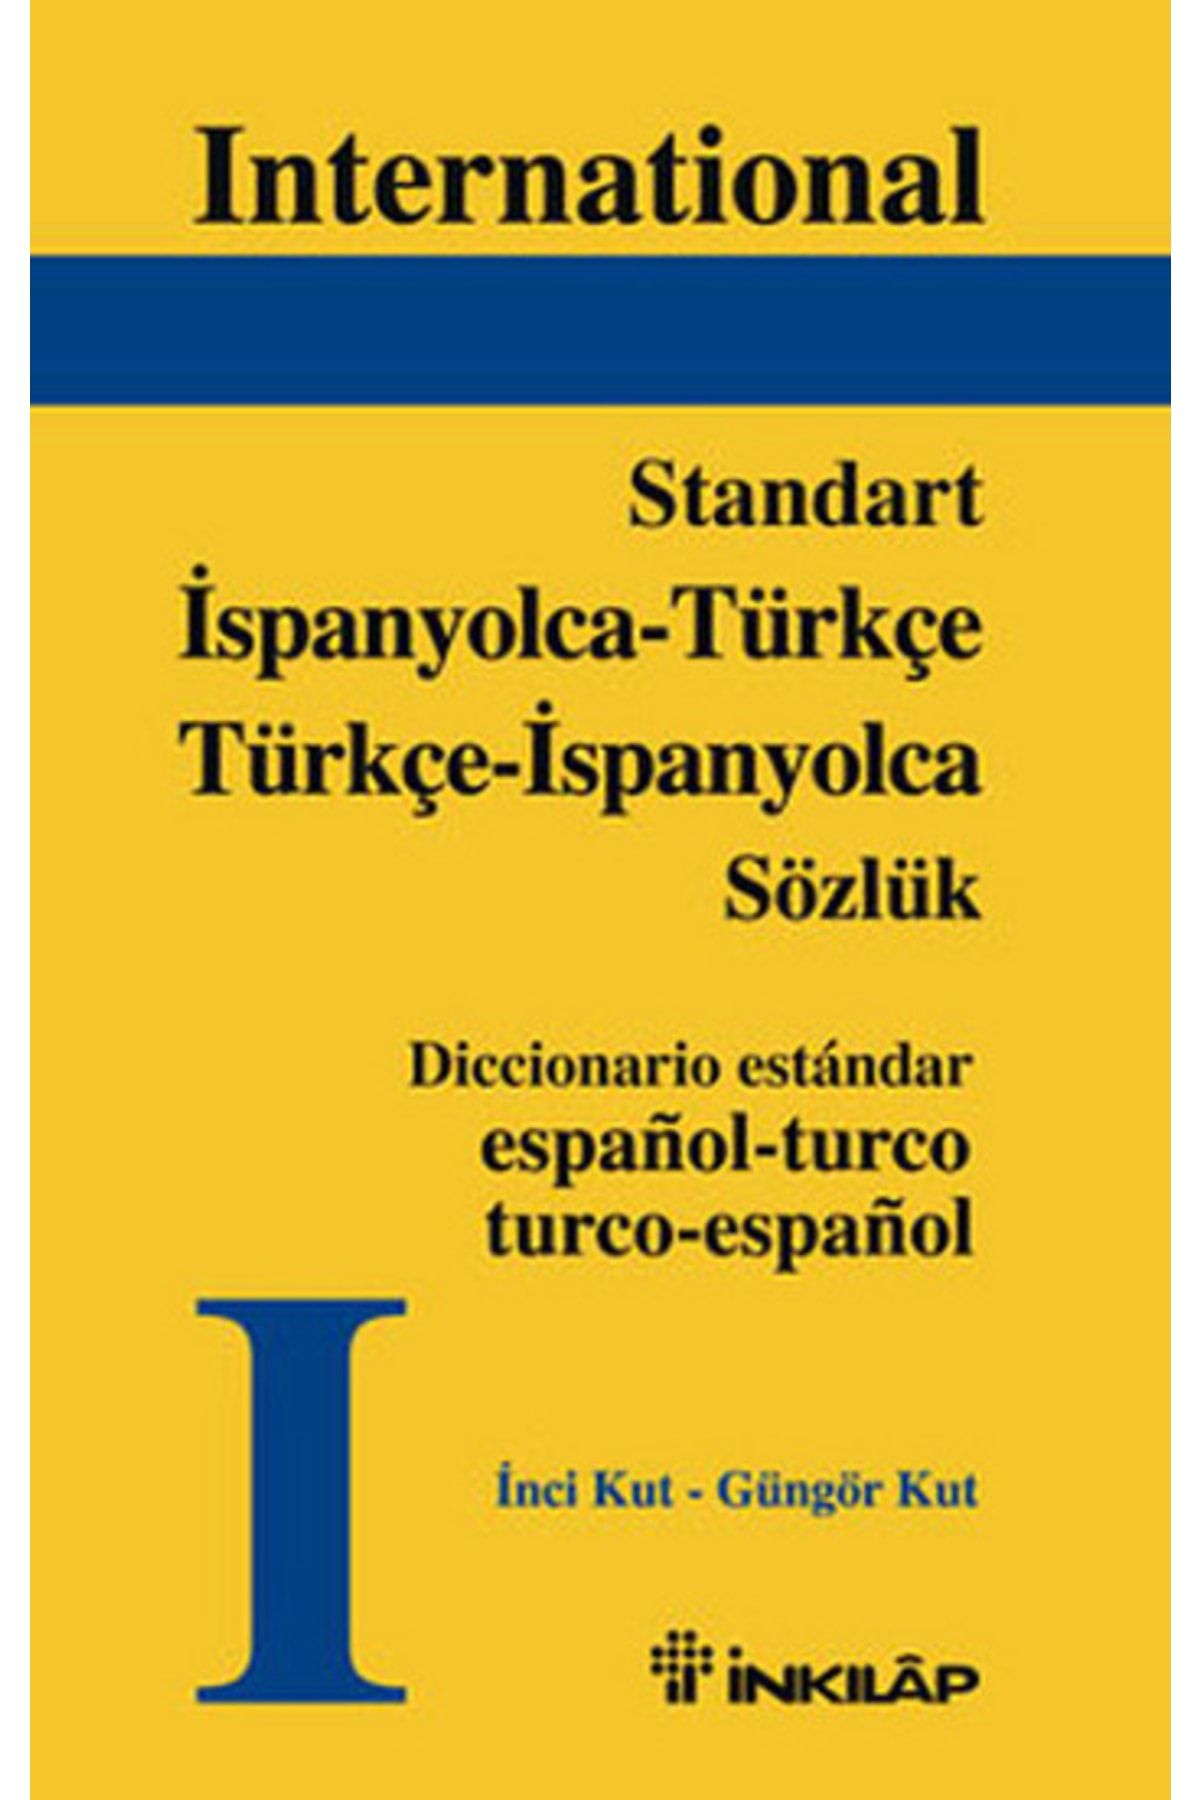 İnkılap Kitabevi Standart Ispanyolca - Türkçe Türkçe - Ispanyolca Sözlük